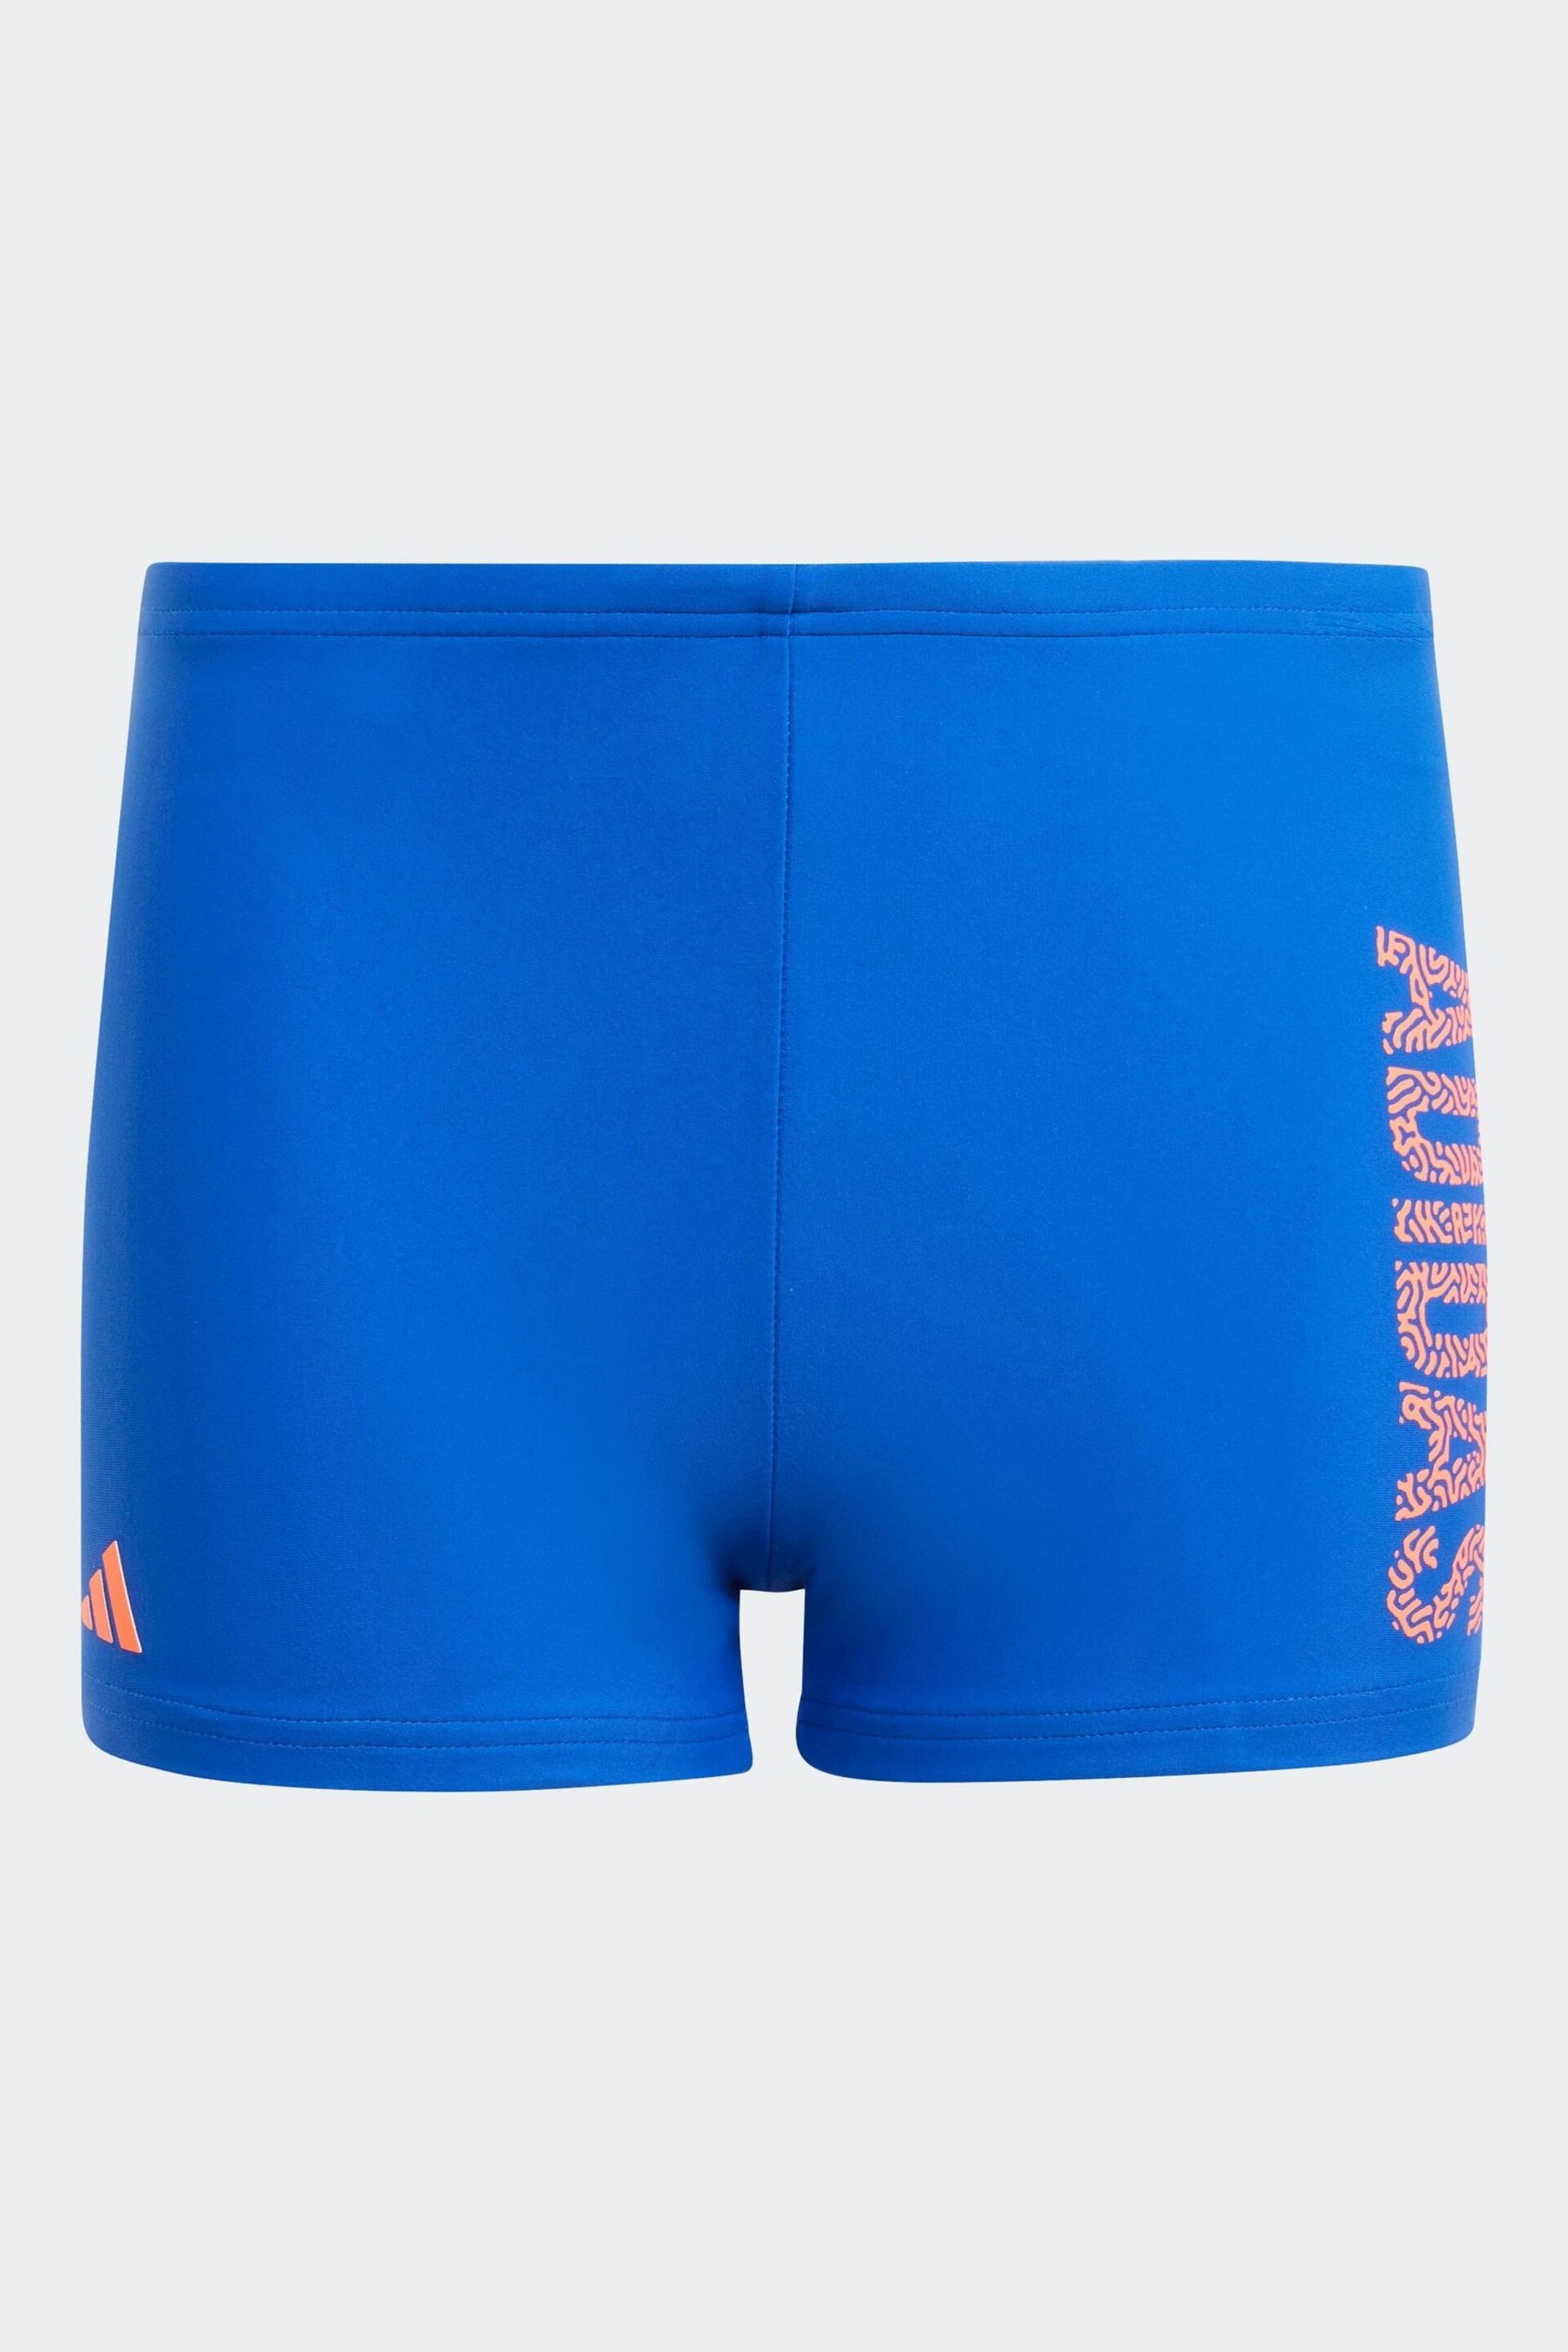 adidas Blue Blue Logo Swim Shorts - Image 1 of 5